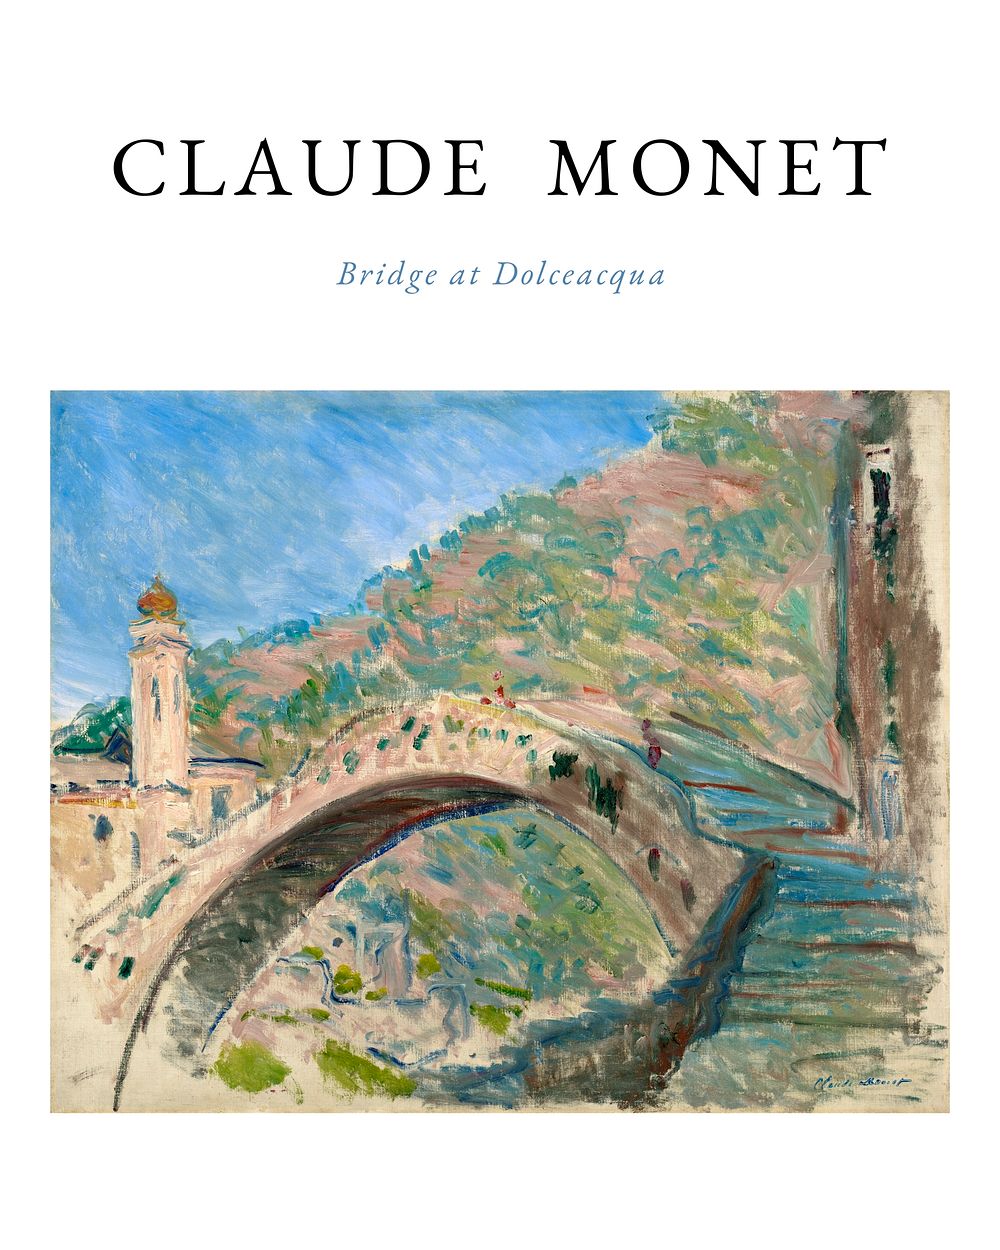 Claude Monet poster, famous painting Bridge at Dolceacqua wall art decor